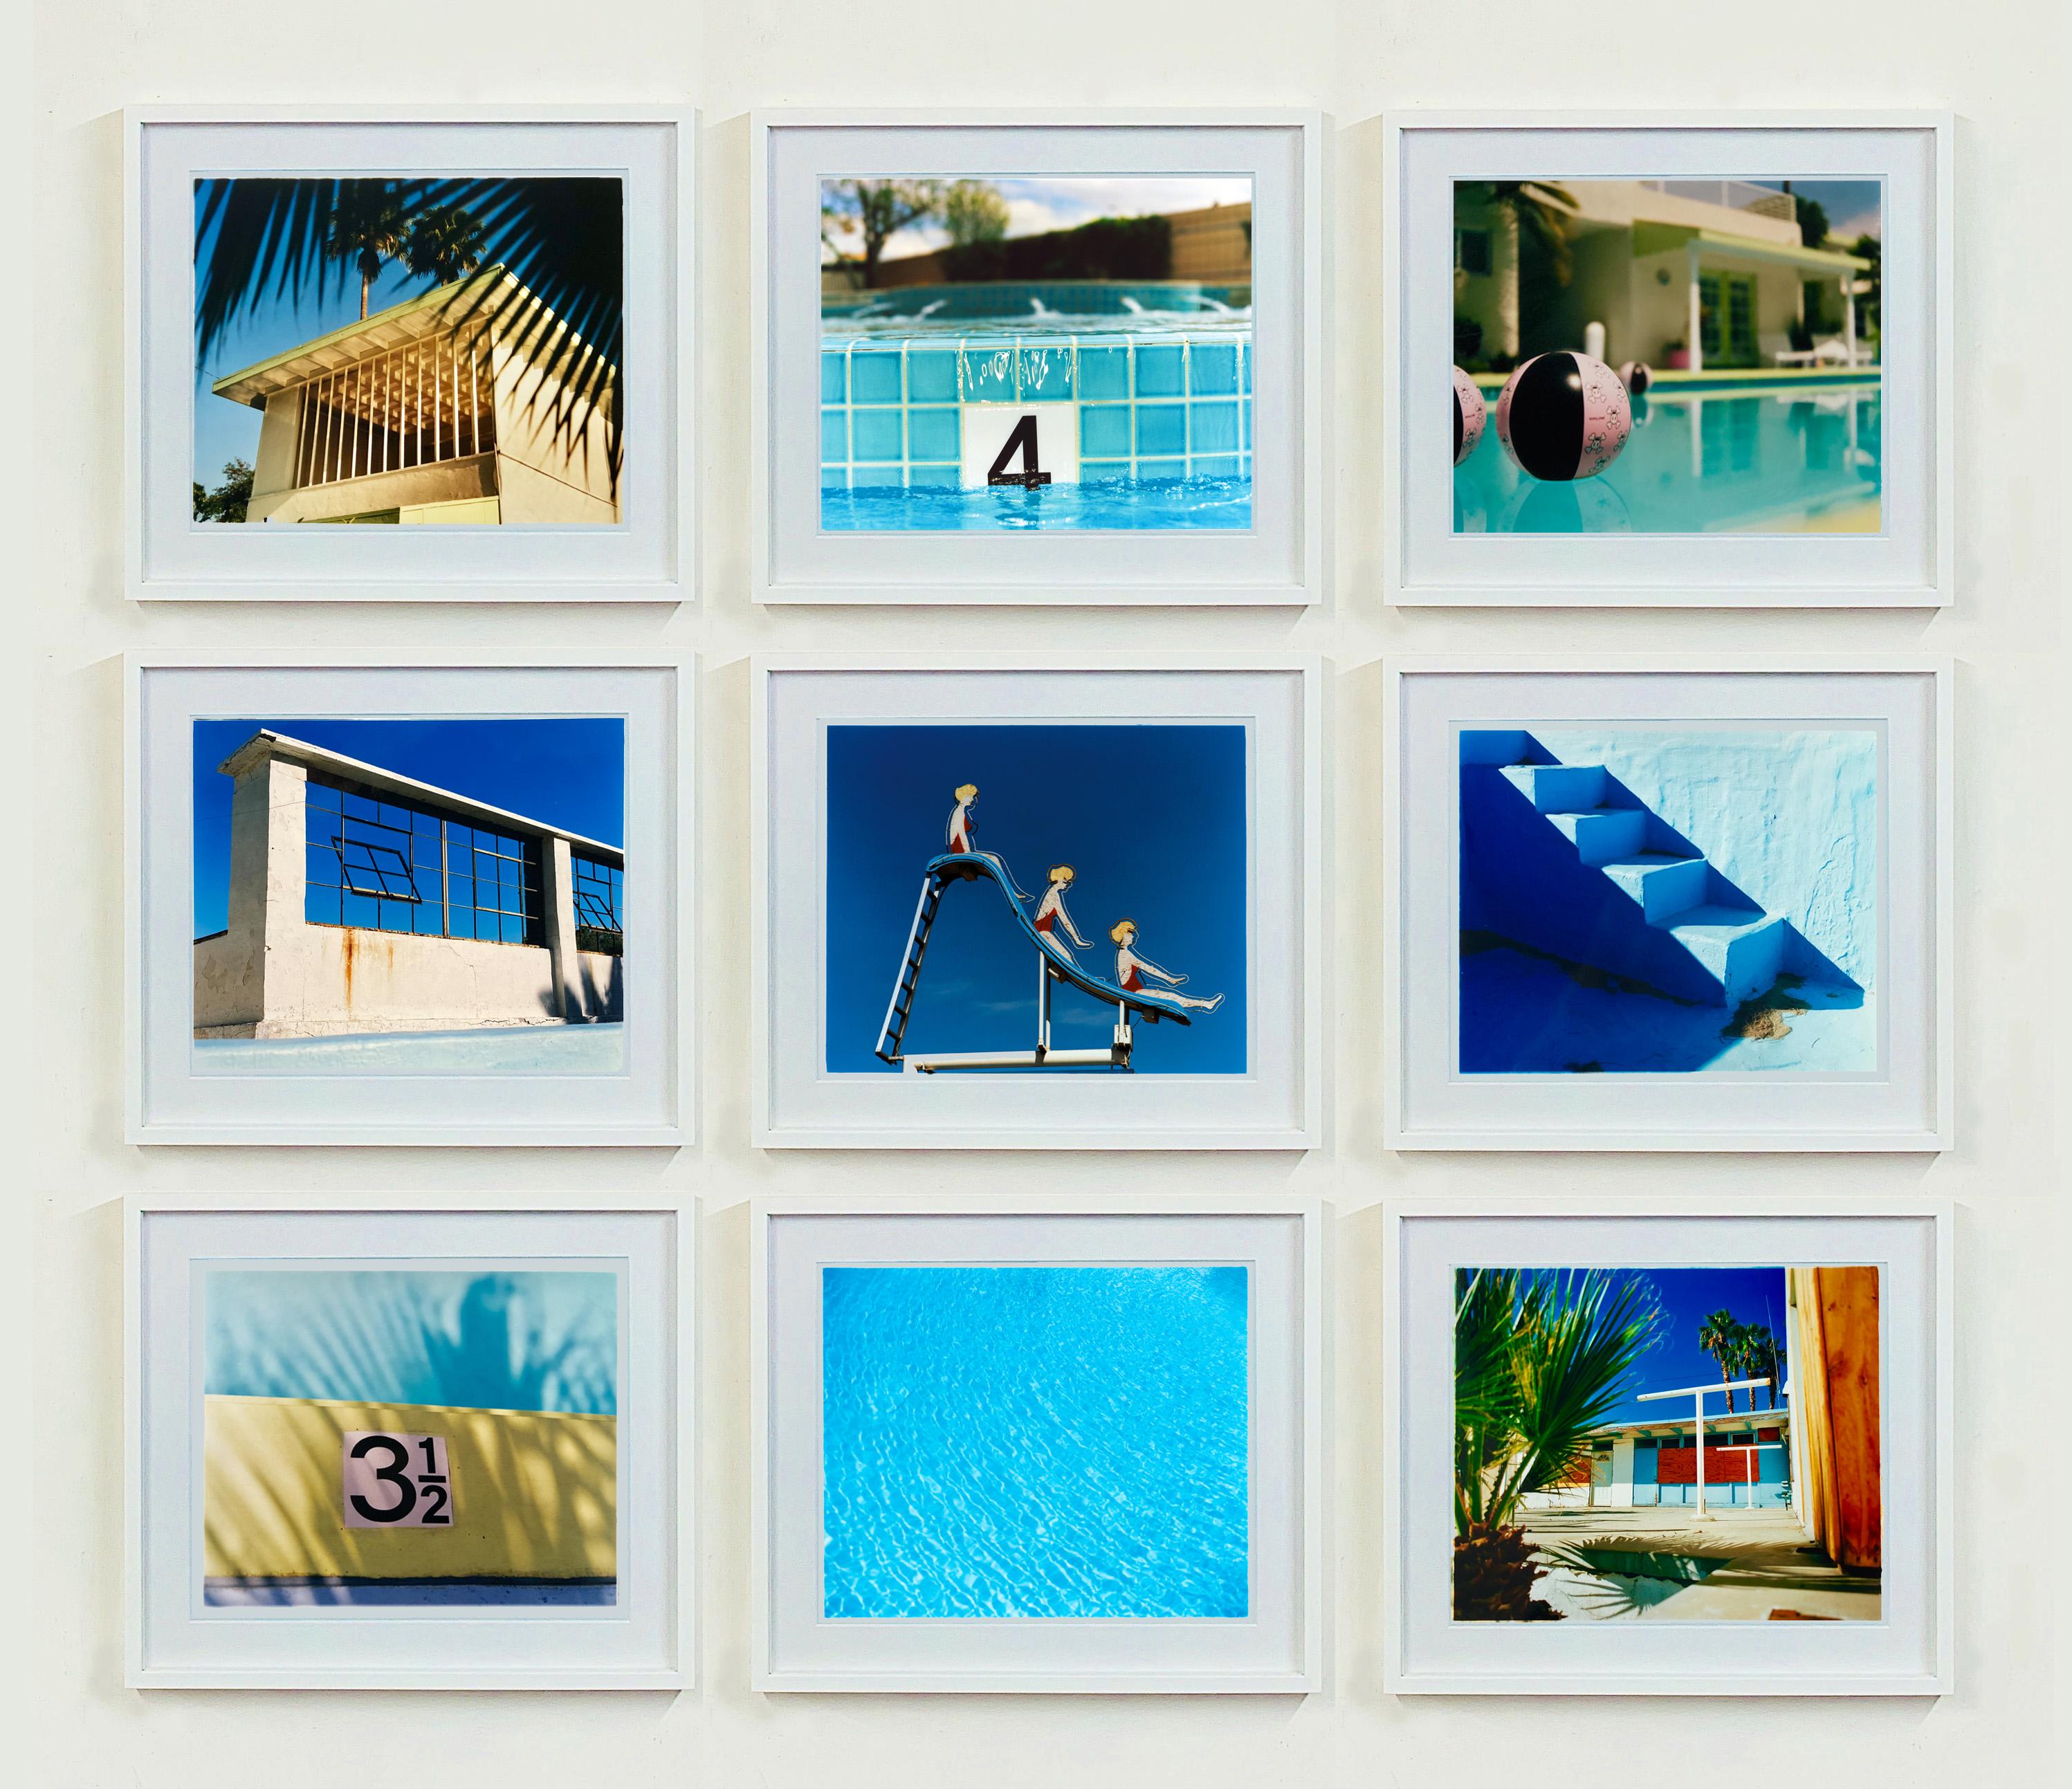 Dream in Color - Installation de piscine - Photographie de couleur bleue américaine